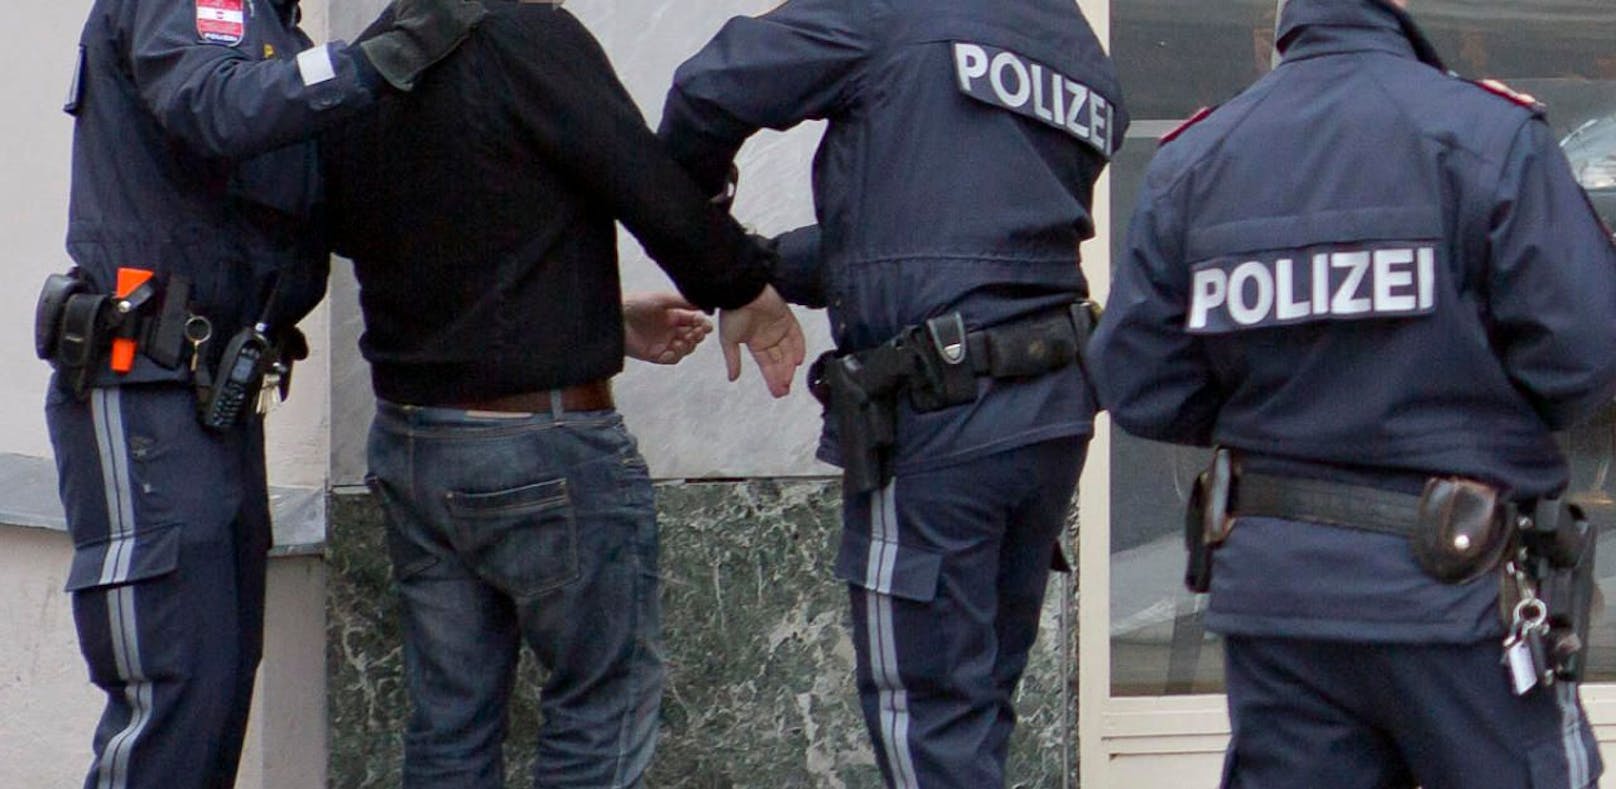 Im Rausch festgenommen - Mann attackierte Polizisten